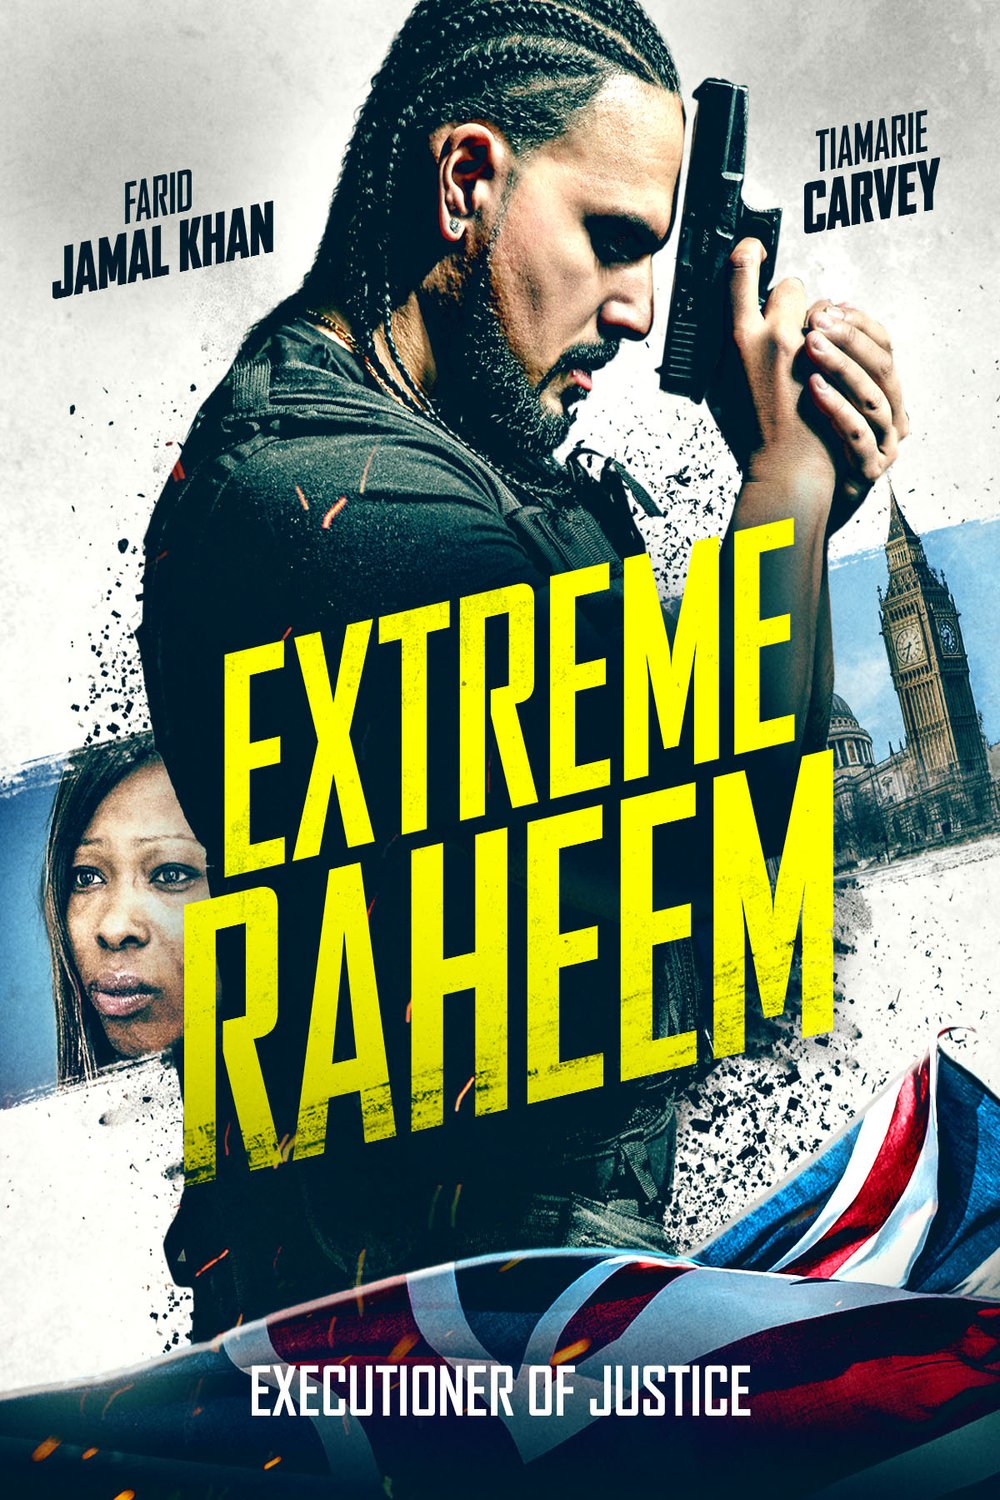 L'affiche du film Extreme Raheem